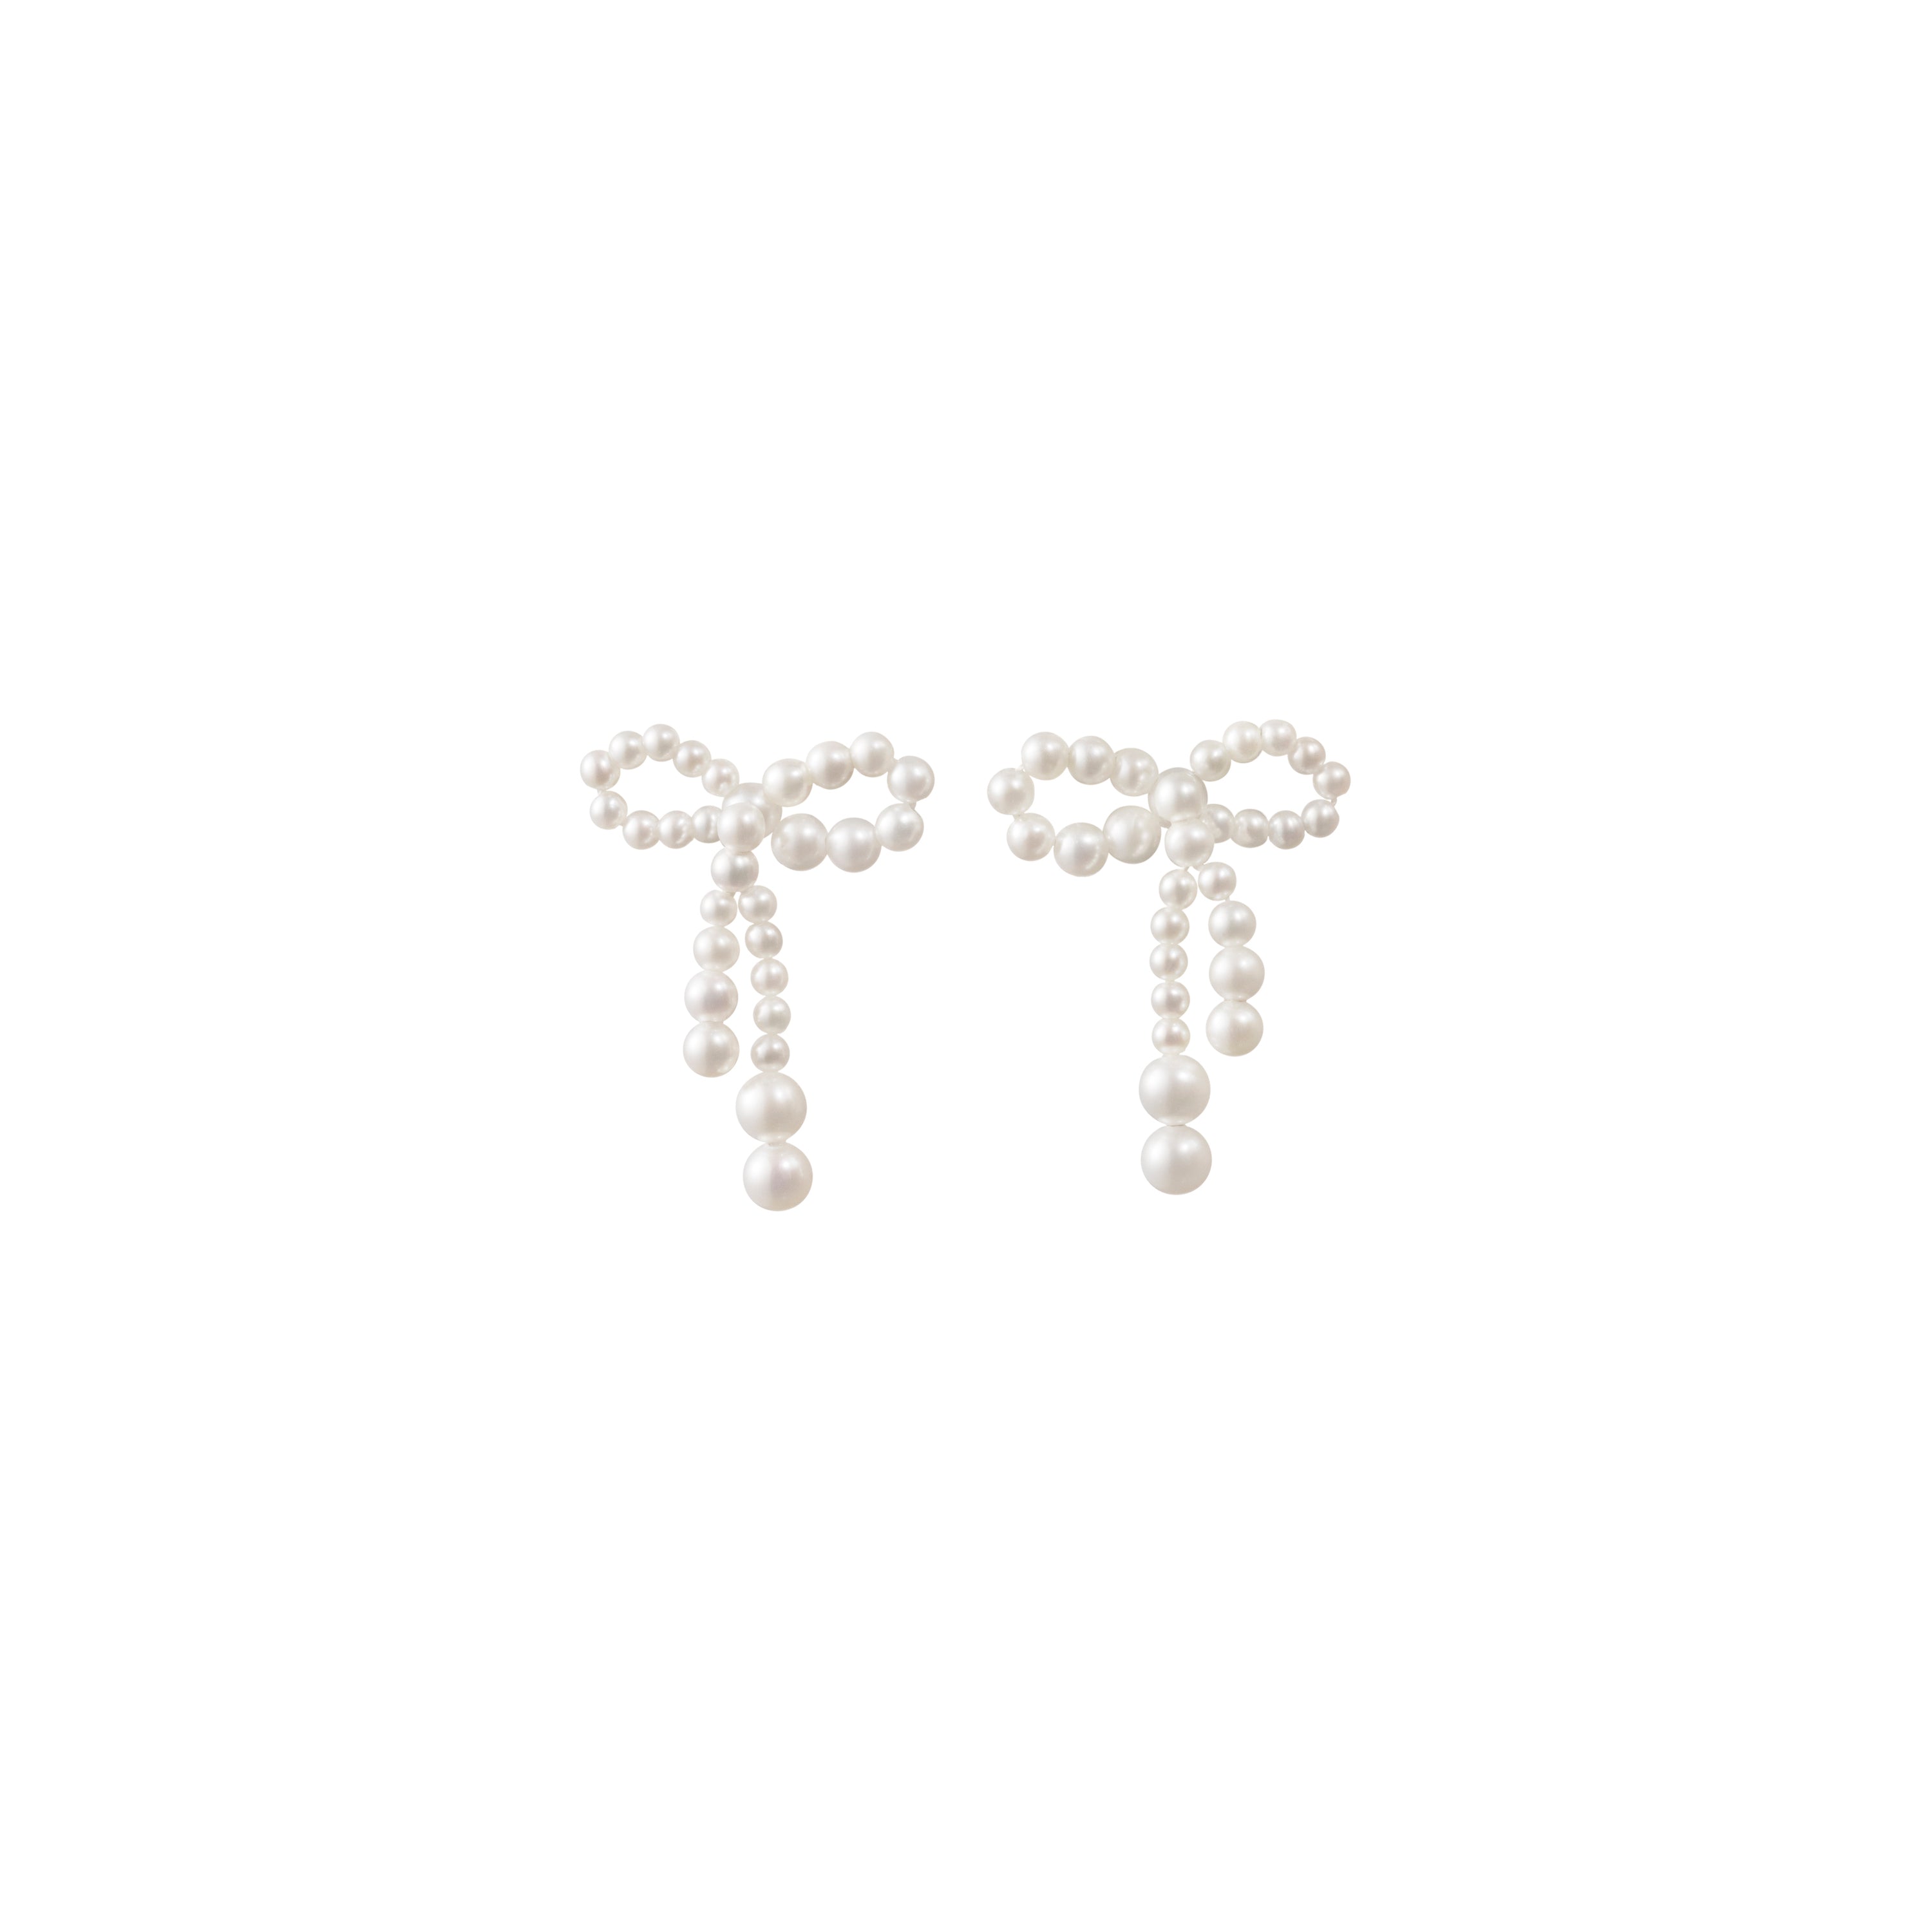 Rosetta de Perles Earrings